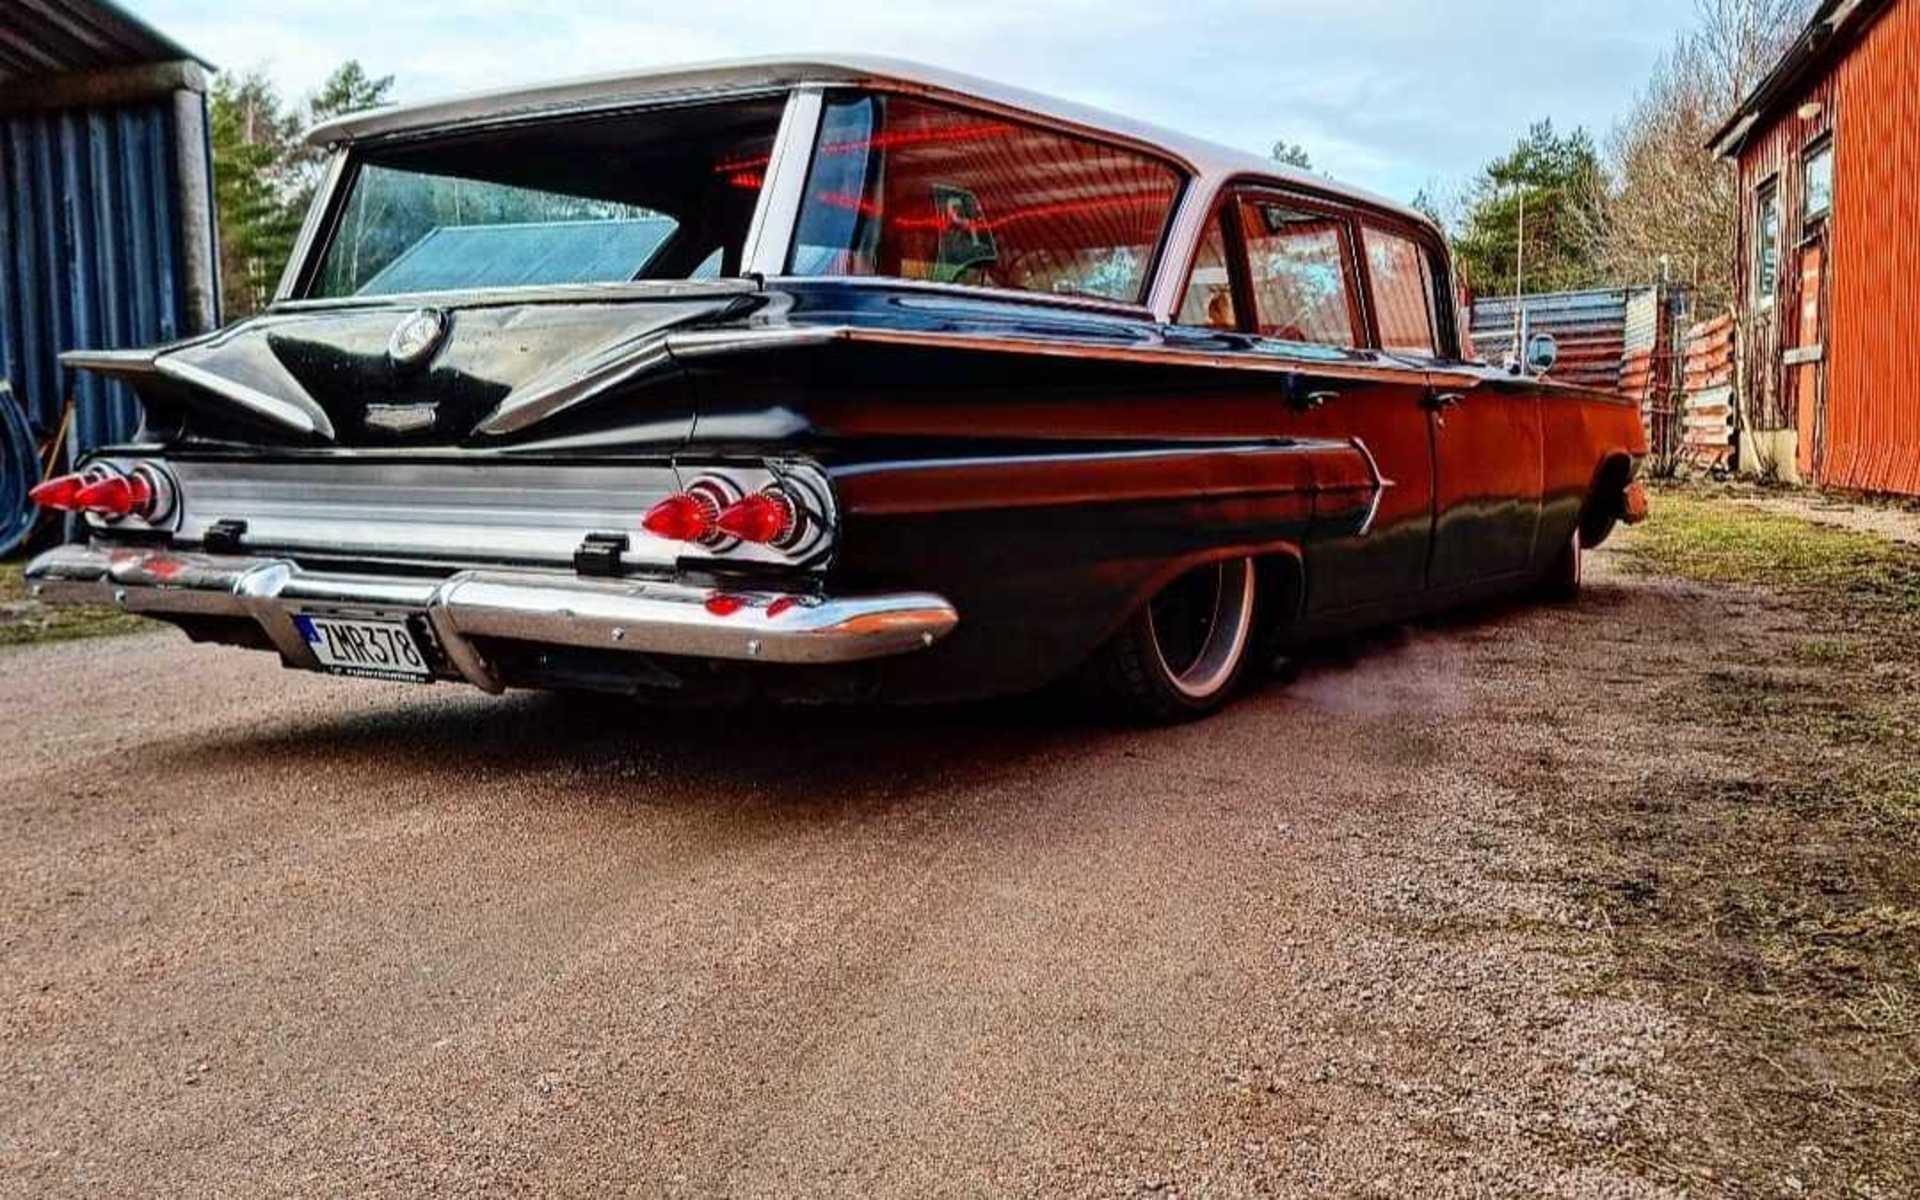 ”Chevrolet kingswood 1960 😁”